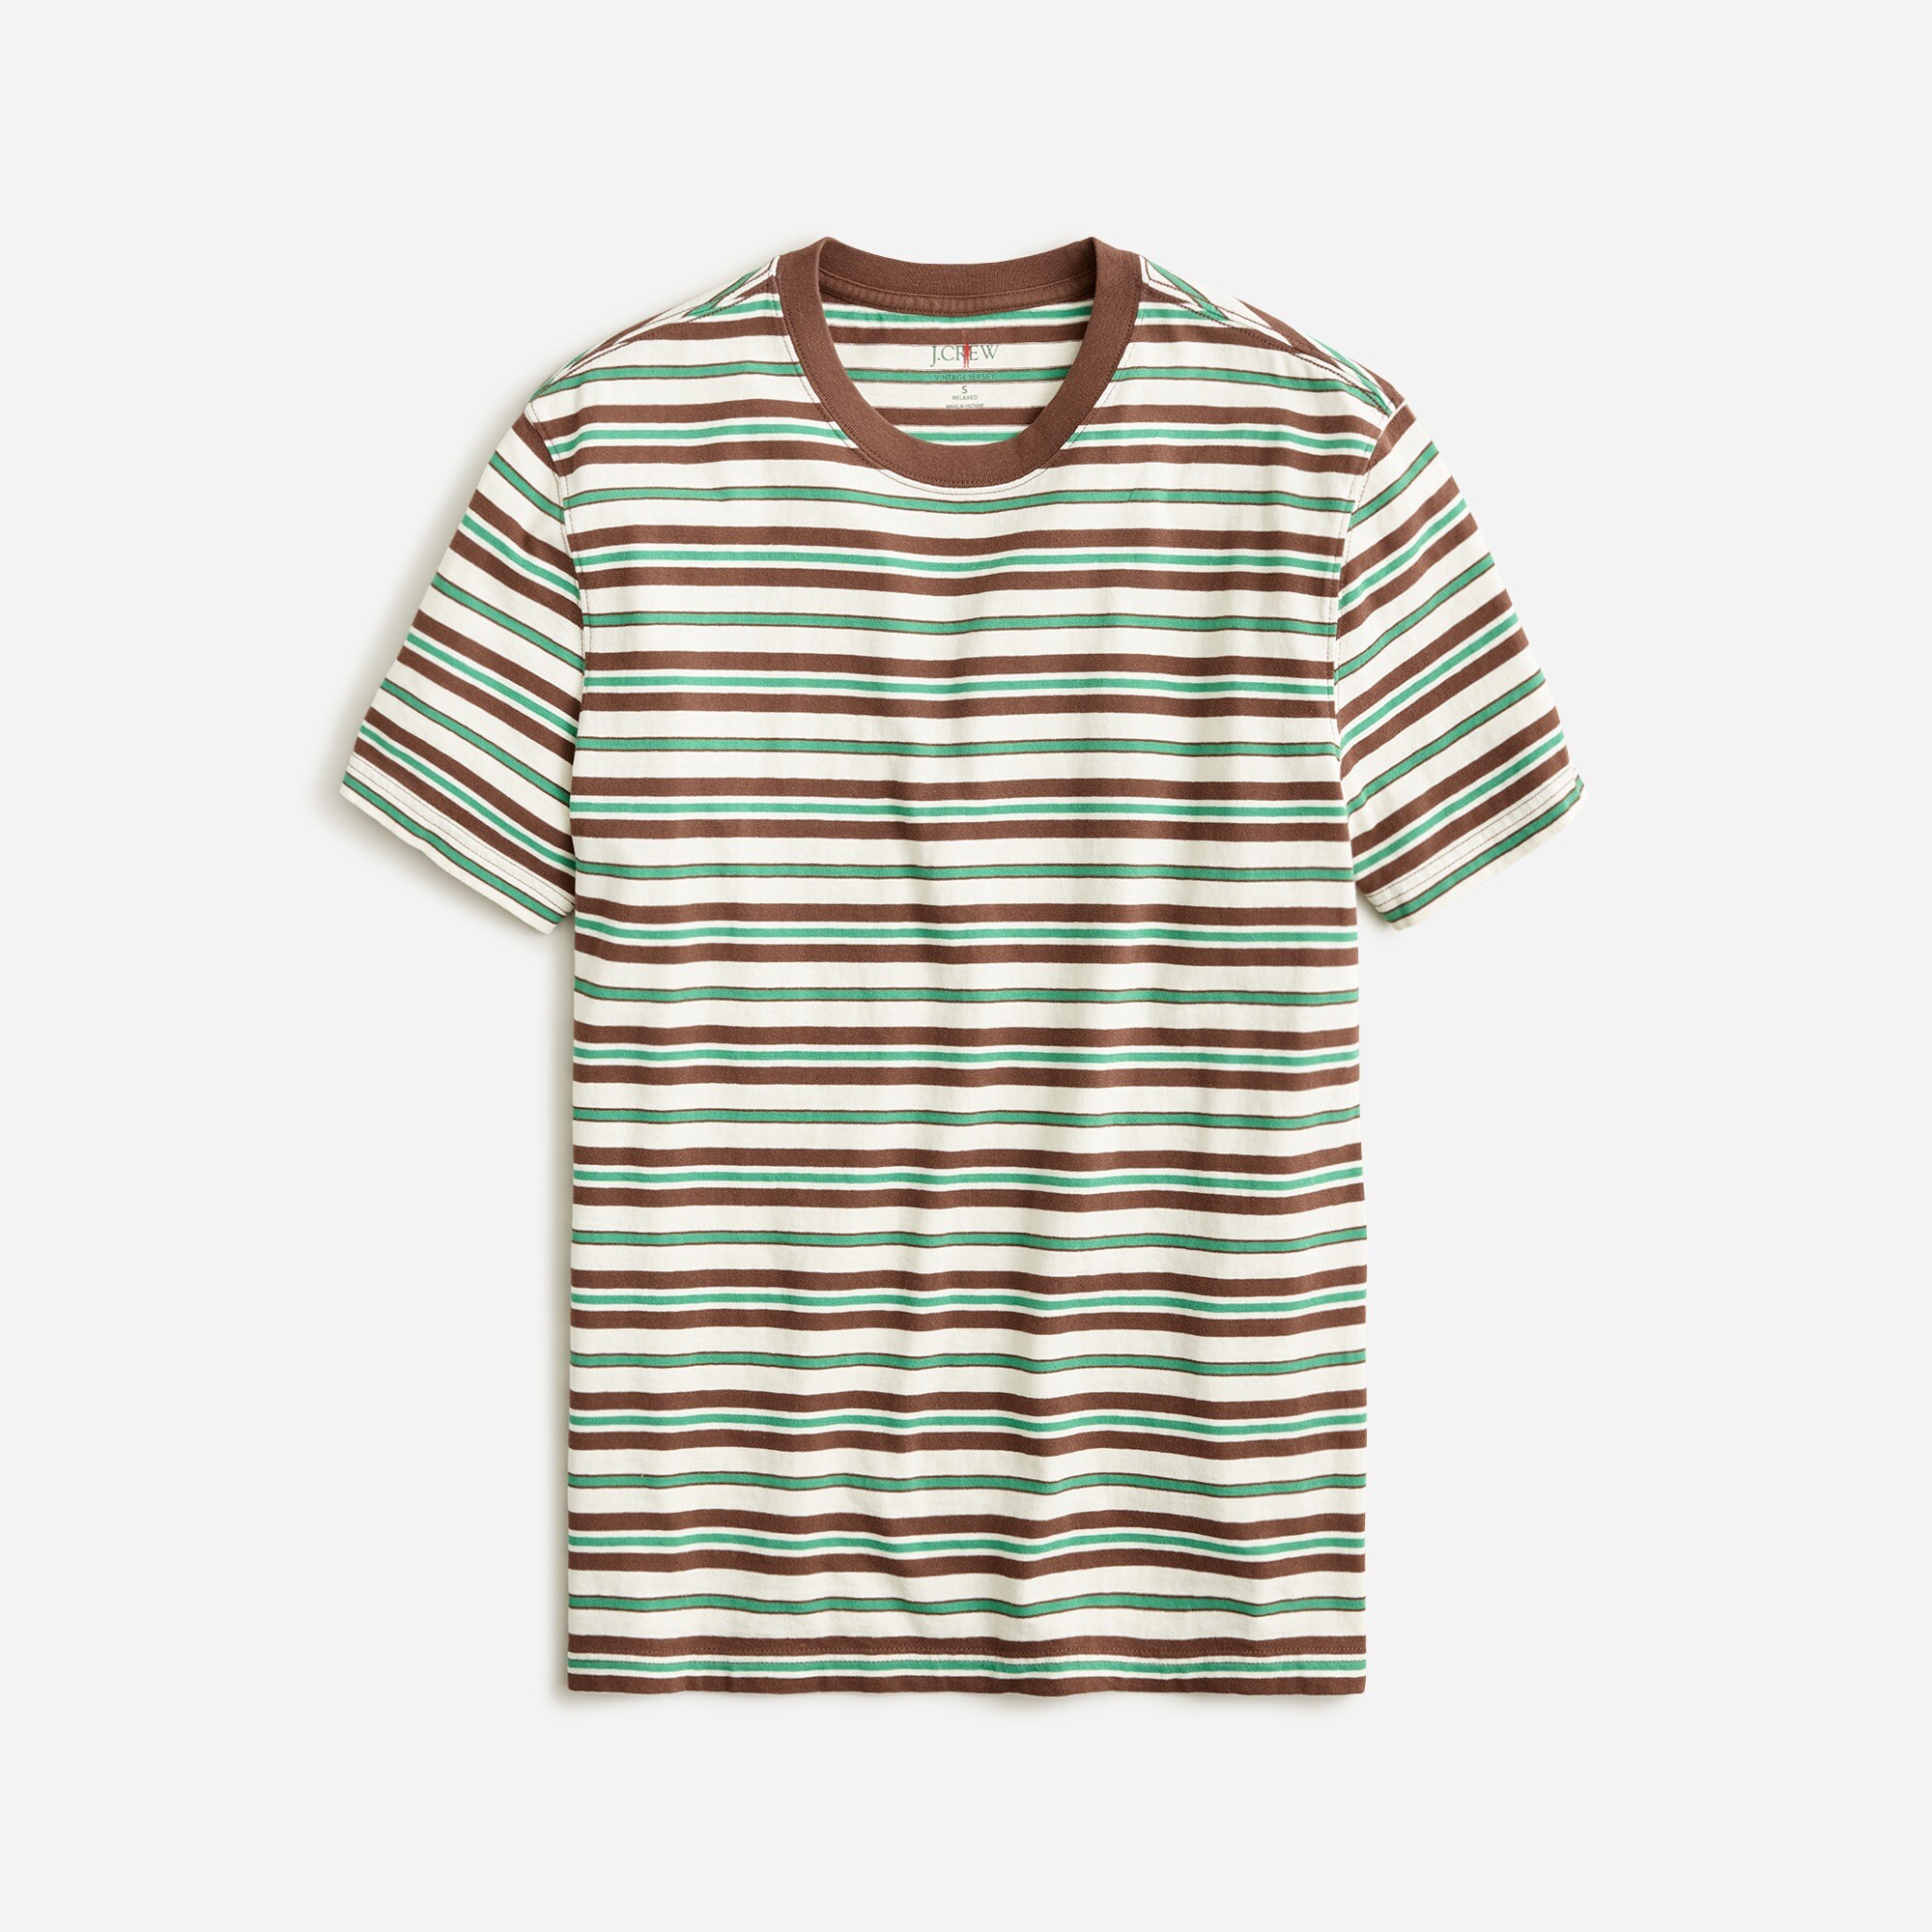  Vintage-wash cotton T-shirt in stripe